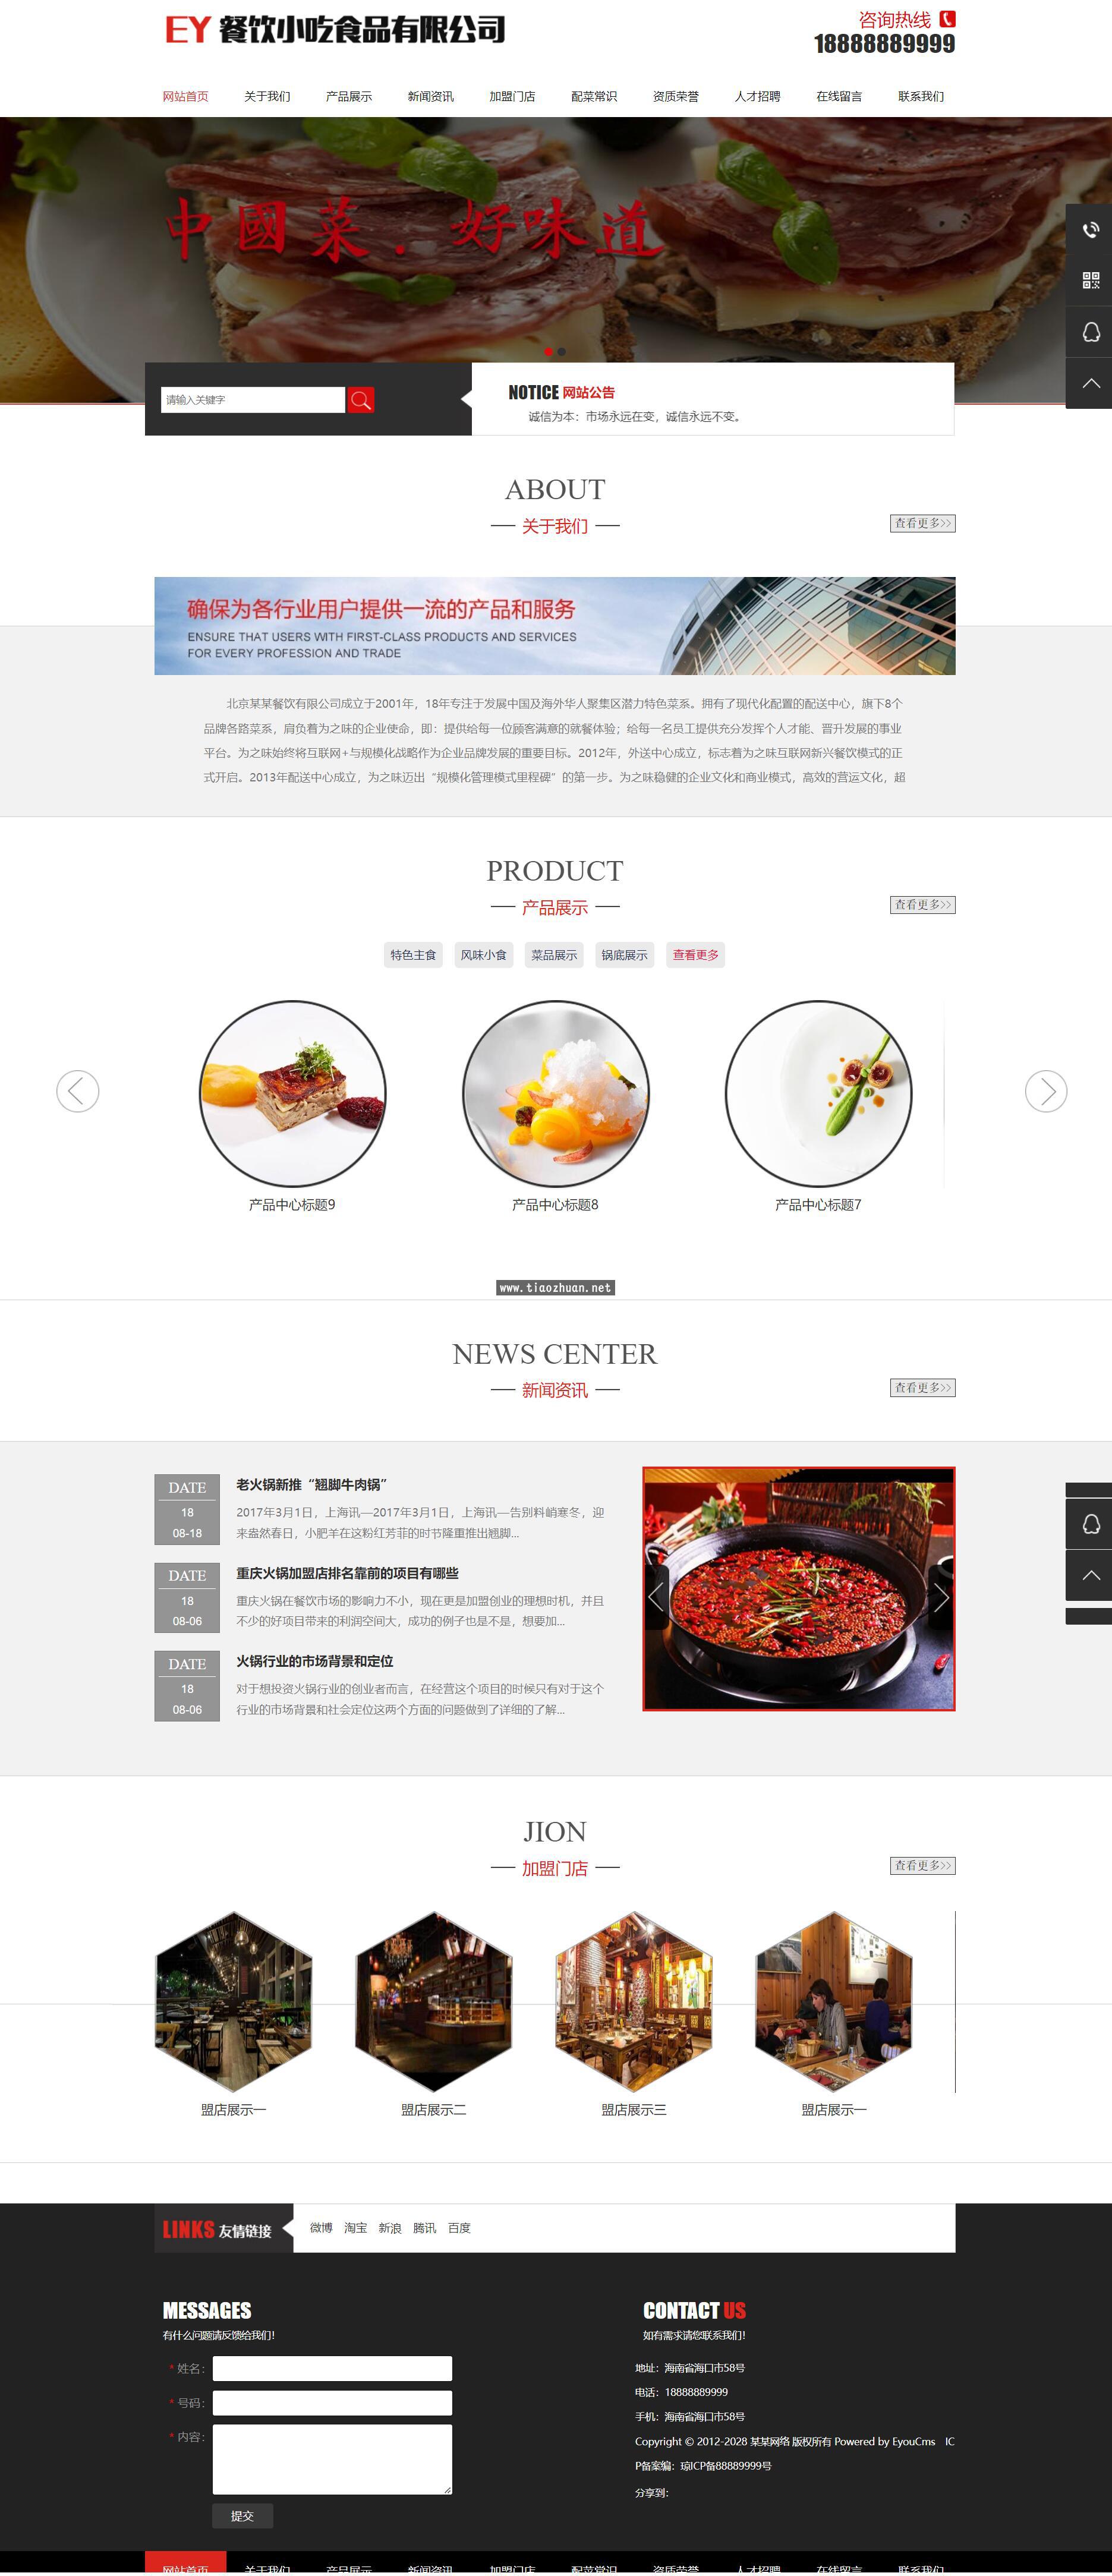 餐饮小吃类网站模板,食品类企业网站源码下载